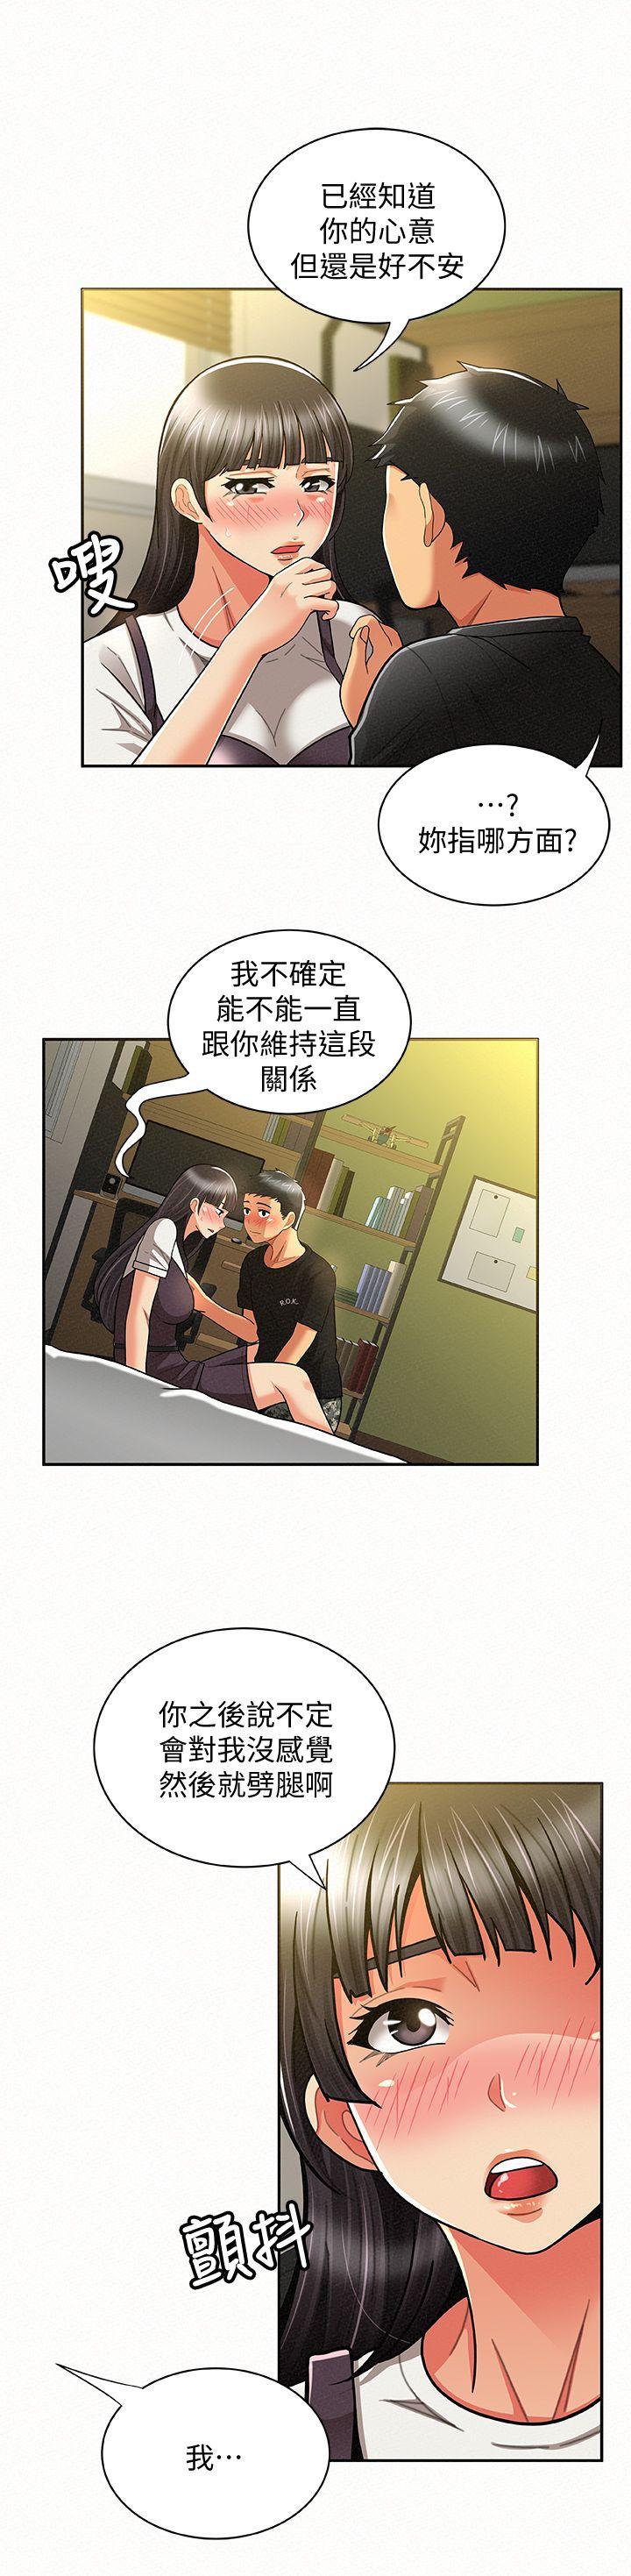 韩国污漫画 報告夫人 第11话-终于到手的诱惑机会 27